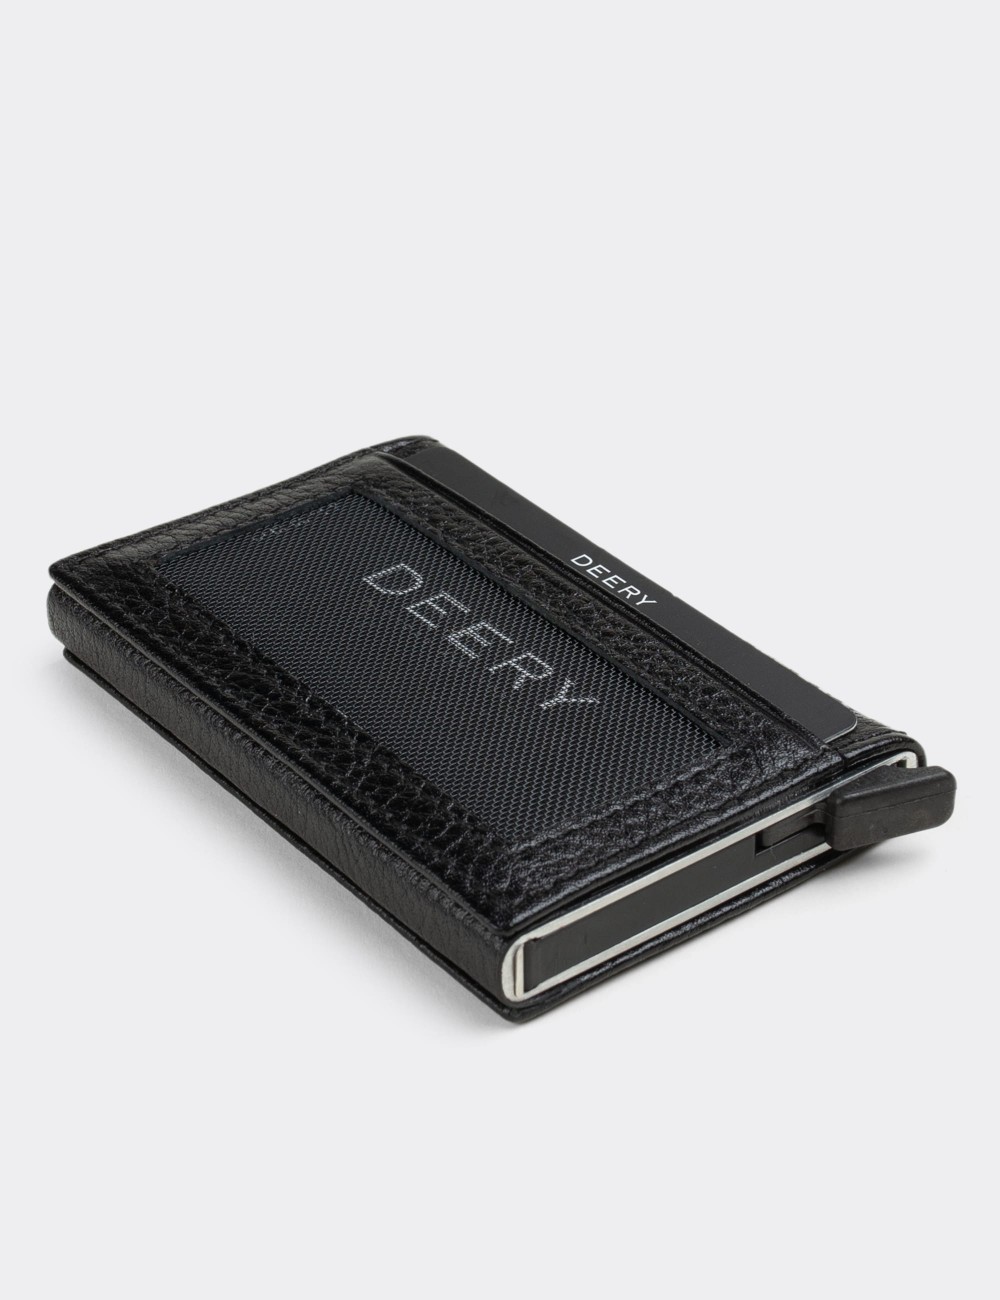  Leather Black Men's Wallet - 00612MSYHZ01